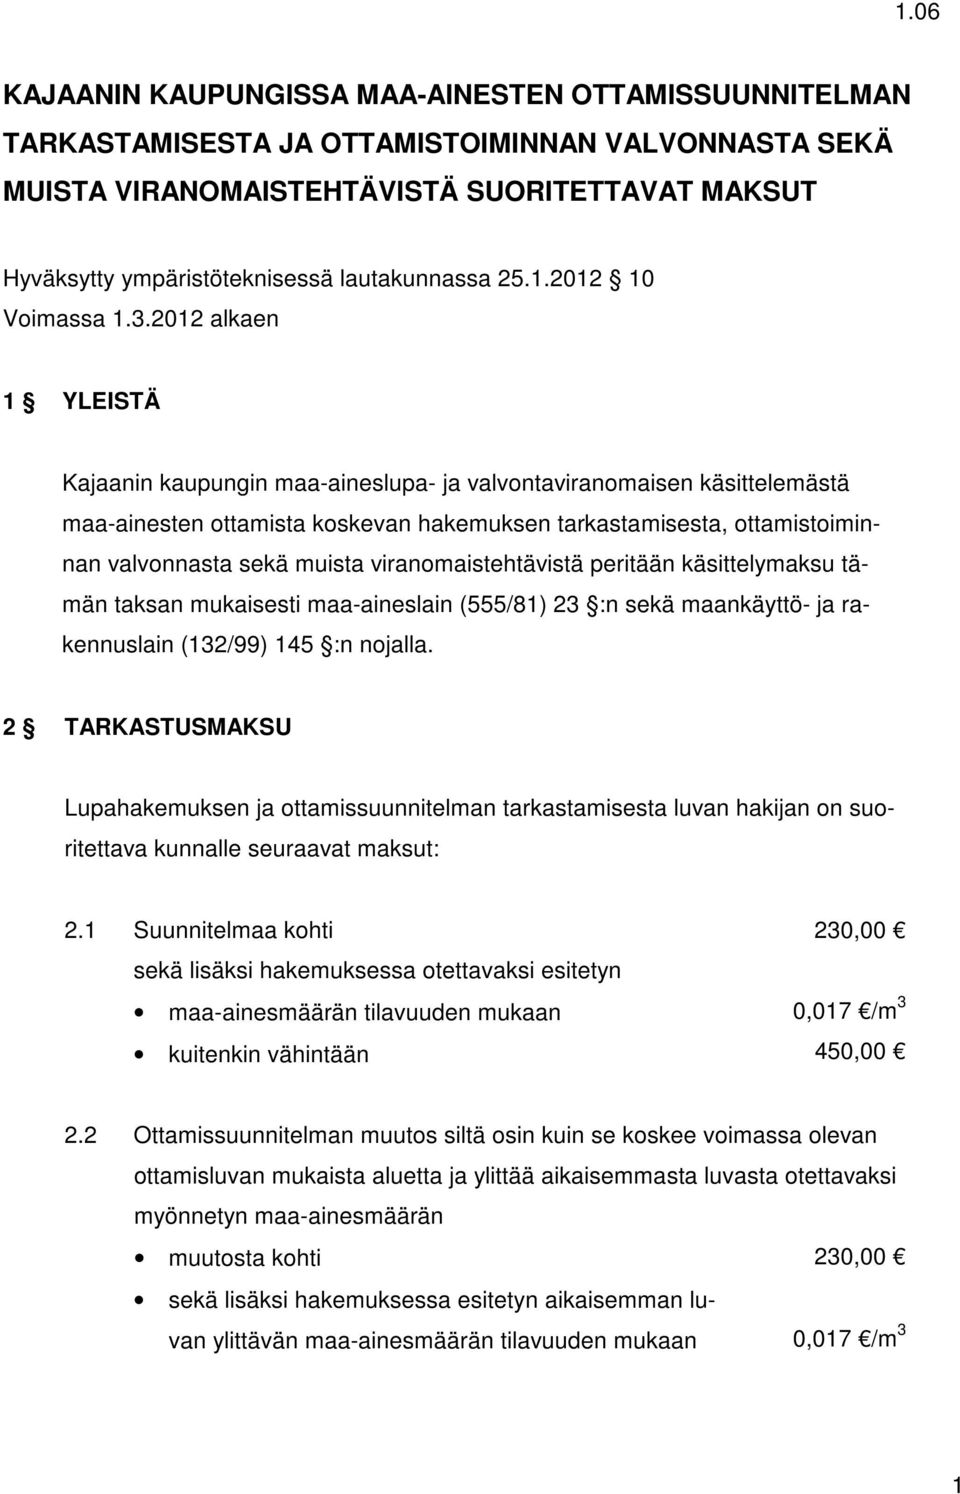 2012 alkaen 1 YLEISTÄ Kajaanin kaupungin maa-aineslupa- ja valvontaviranomaisen käsittelemästä maa-ainesten ottamista koskevan hakemuksen tarkastamisesta, ottamistoiminnan valvonnasta sekä muista